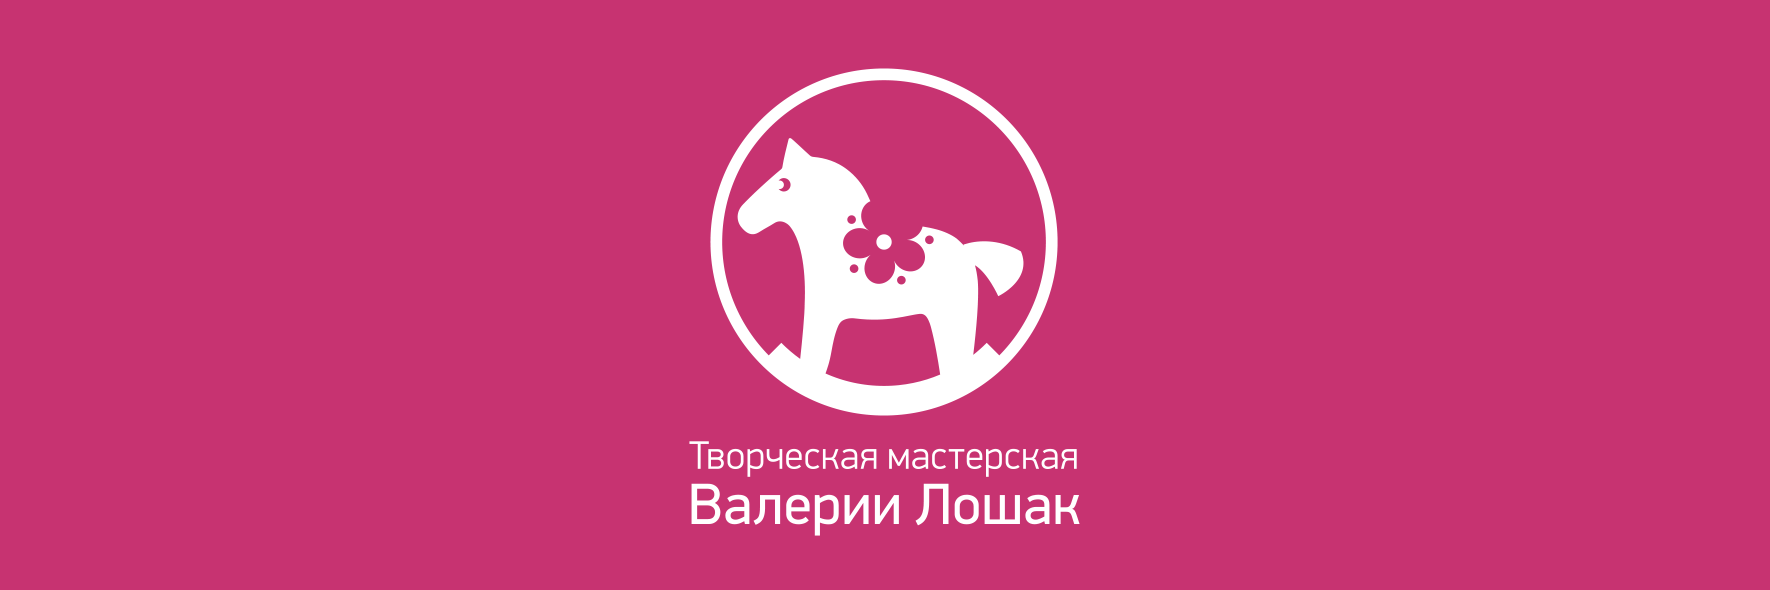 Логотип творческой мастерской Валерии Лошак